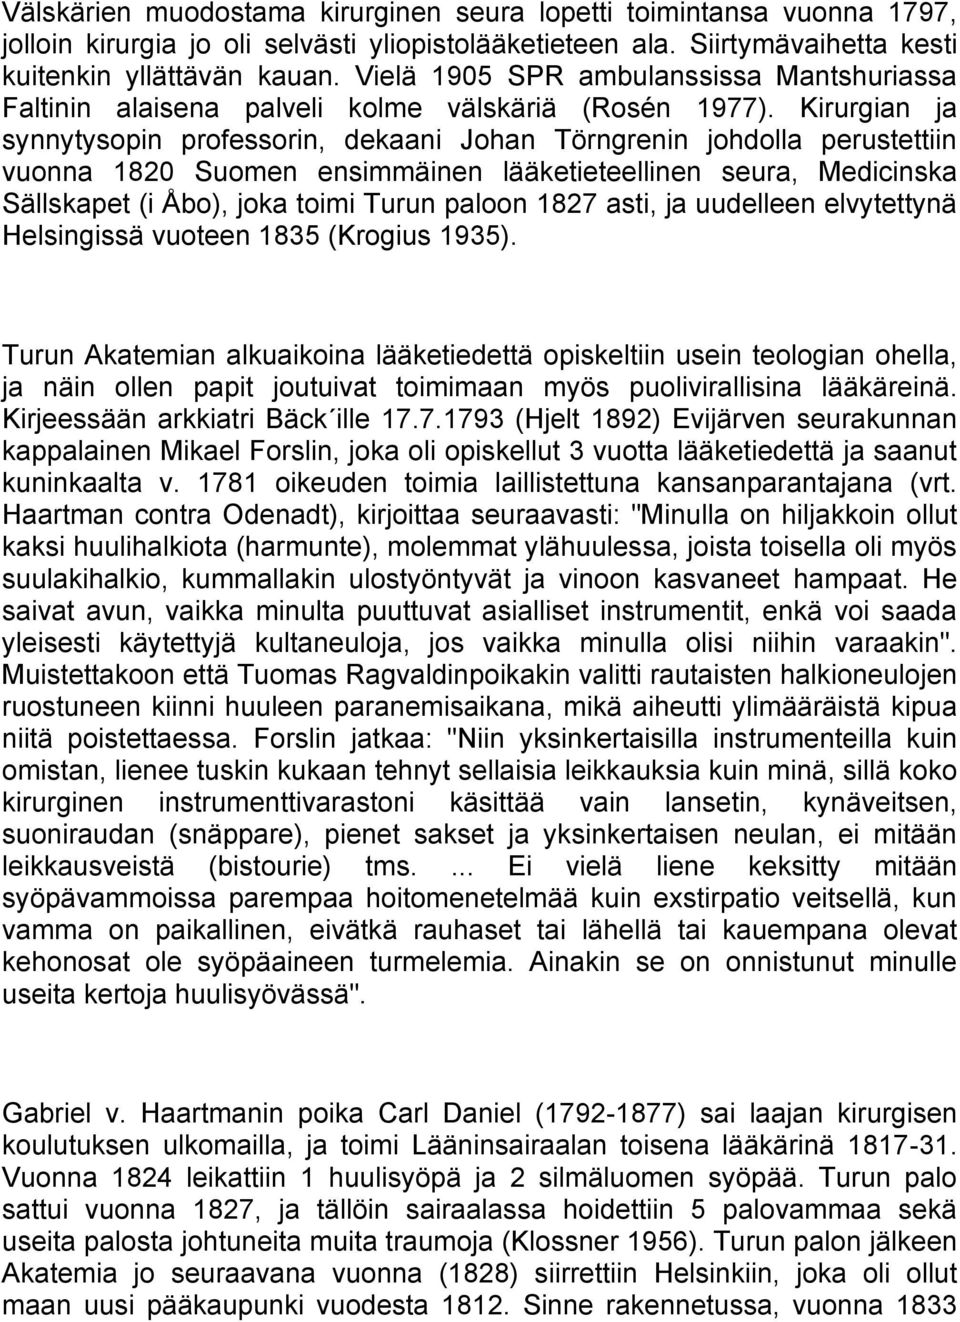 Kirurgian ja synnytysopin professorin, dekaani Johan Törngrenin johdolla perustettiin vuonna 1820 Suomen ensimmäinen lääketieteellinen seura, Medicinska Sällskapet (i Åbo), joka toimi Turun paloon